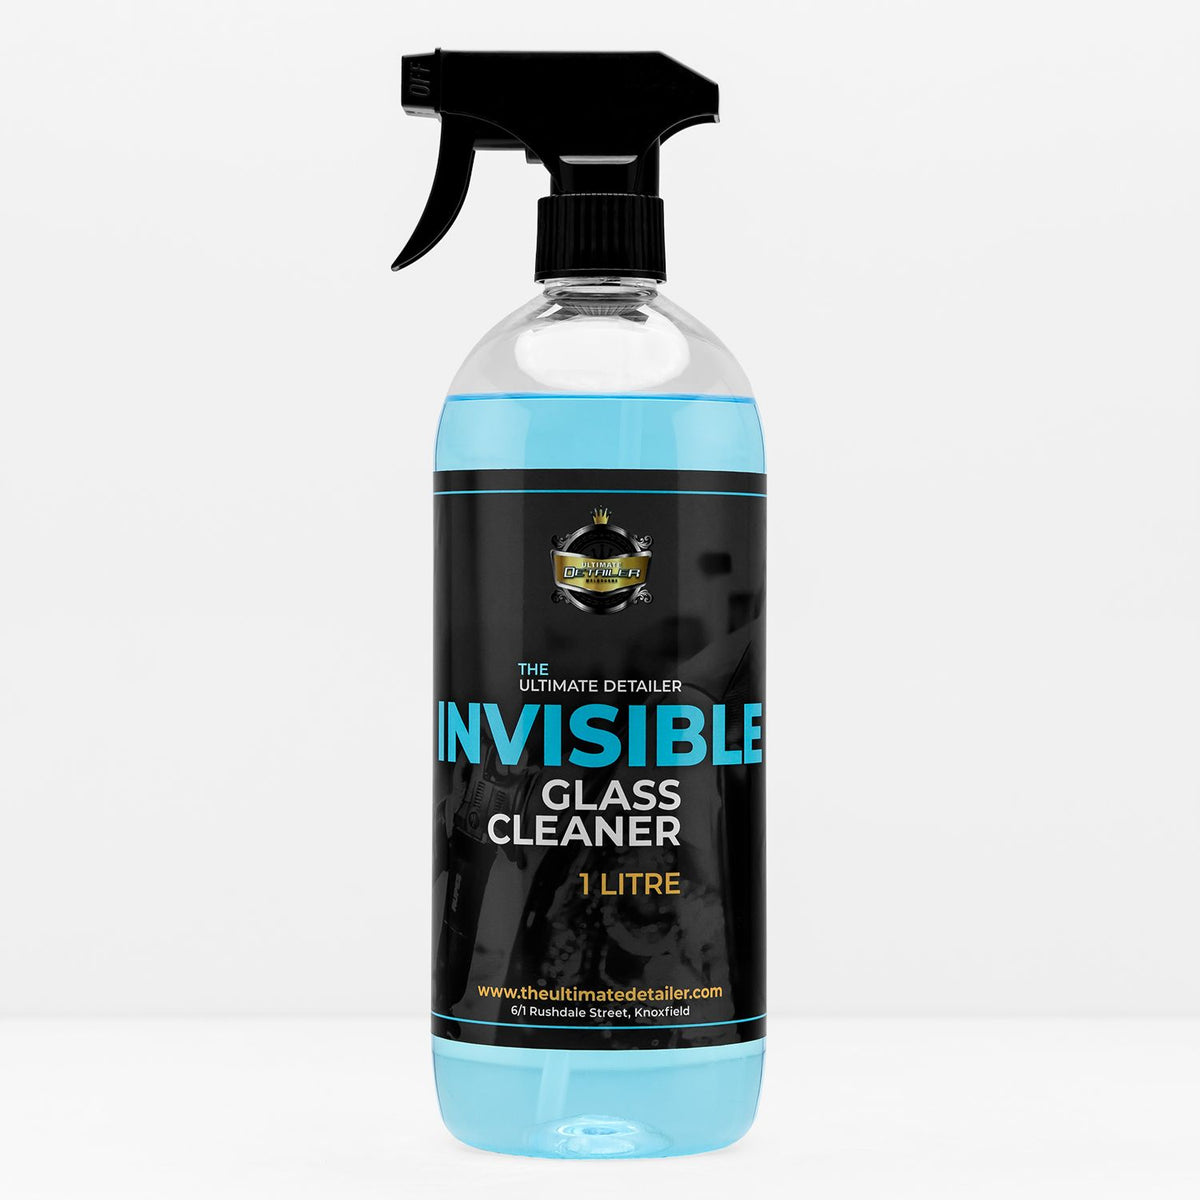 Invisible Glass